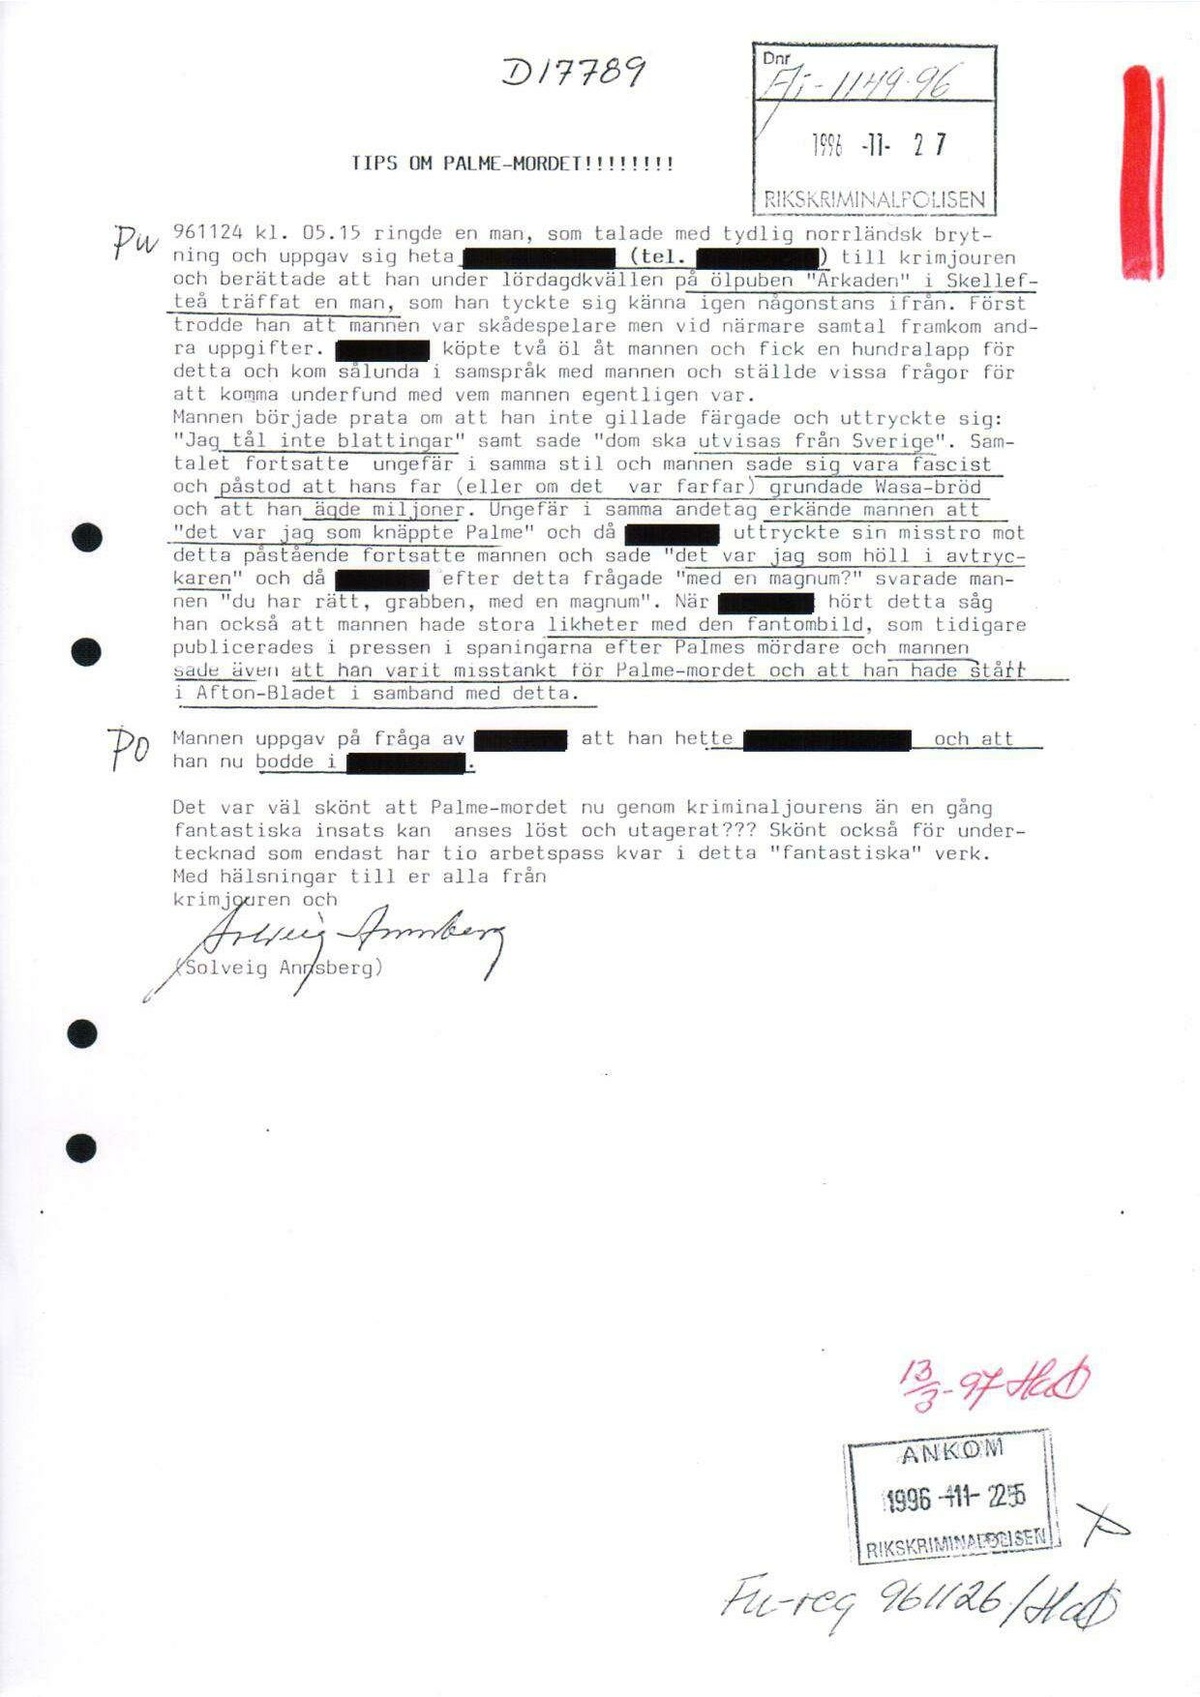 Pol-1996-11-24 0515 D17789-00 Erkännanden Palmemordet.pdf